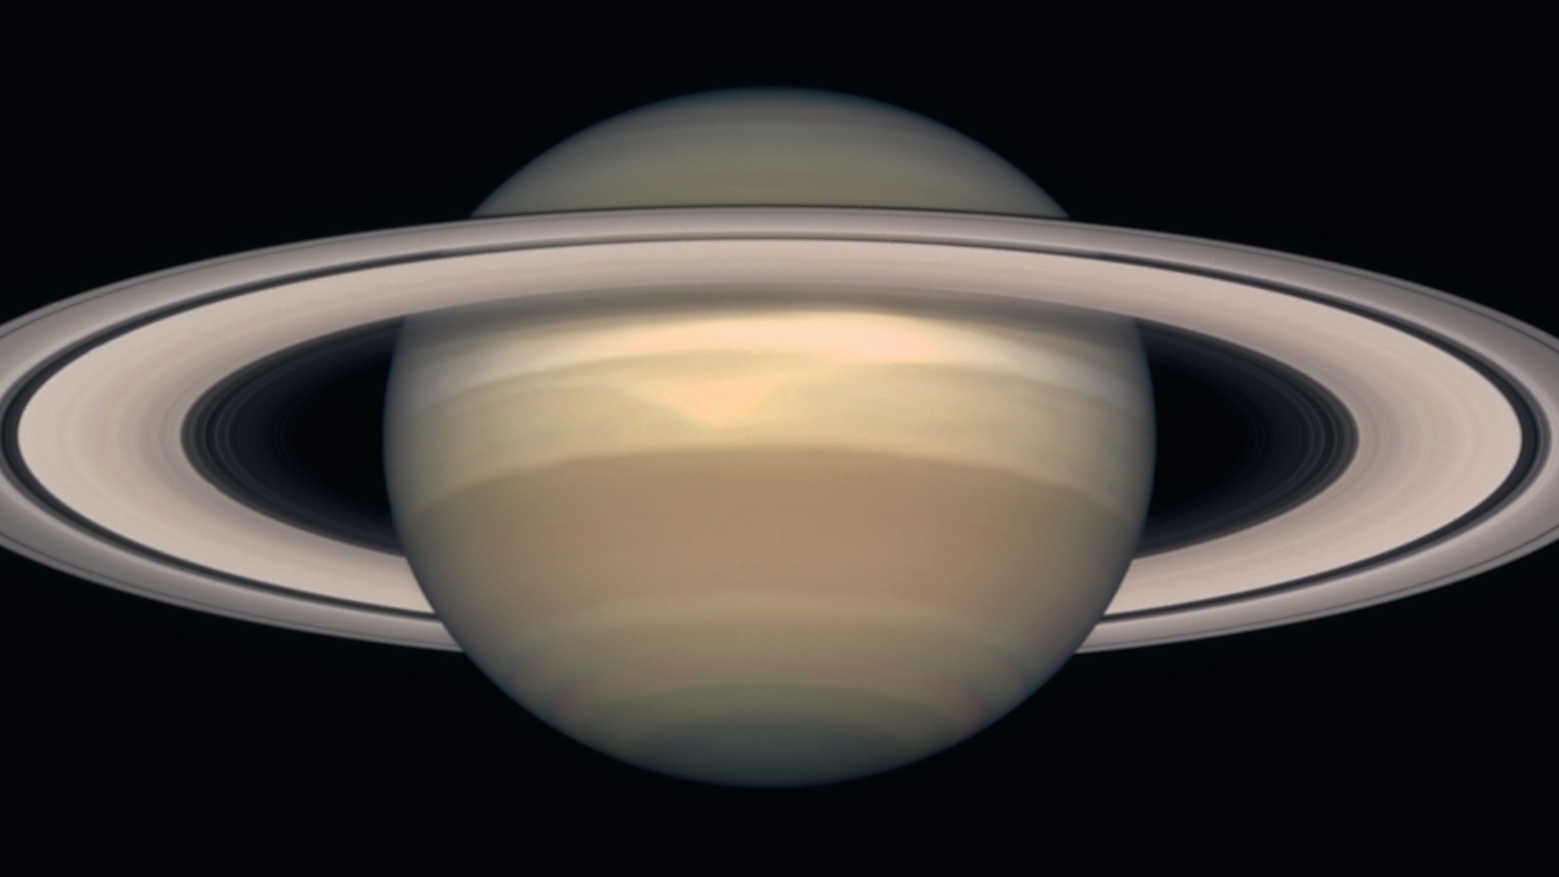 It's spoke season on Saturn!